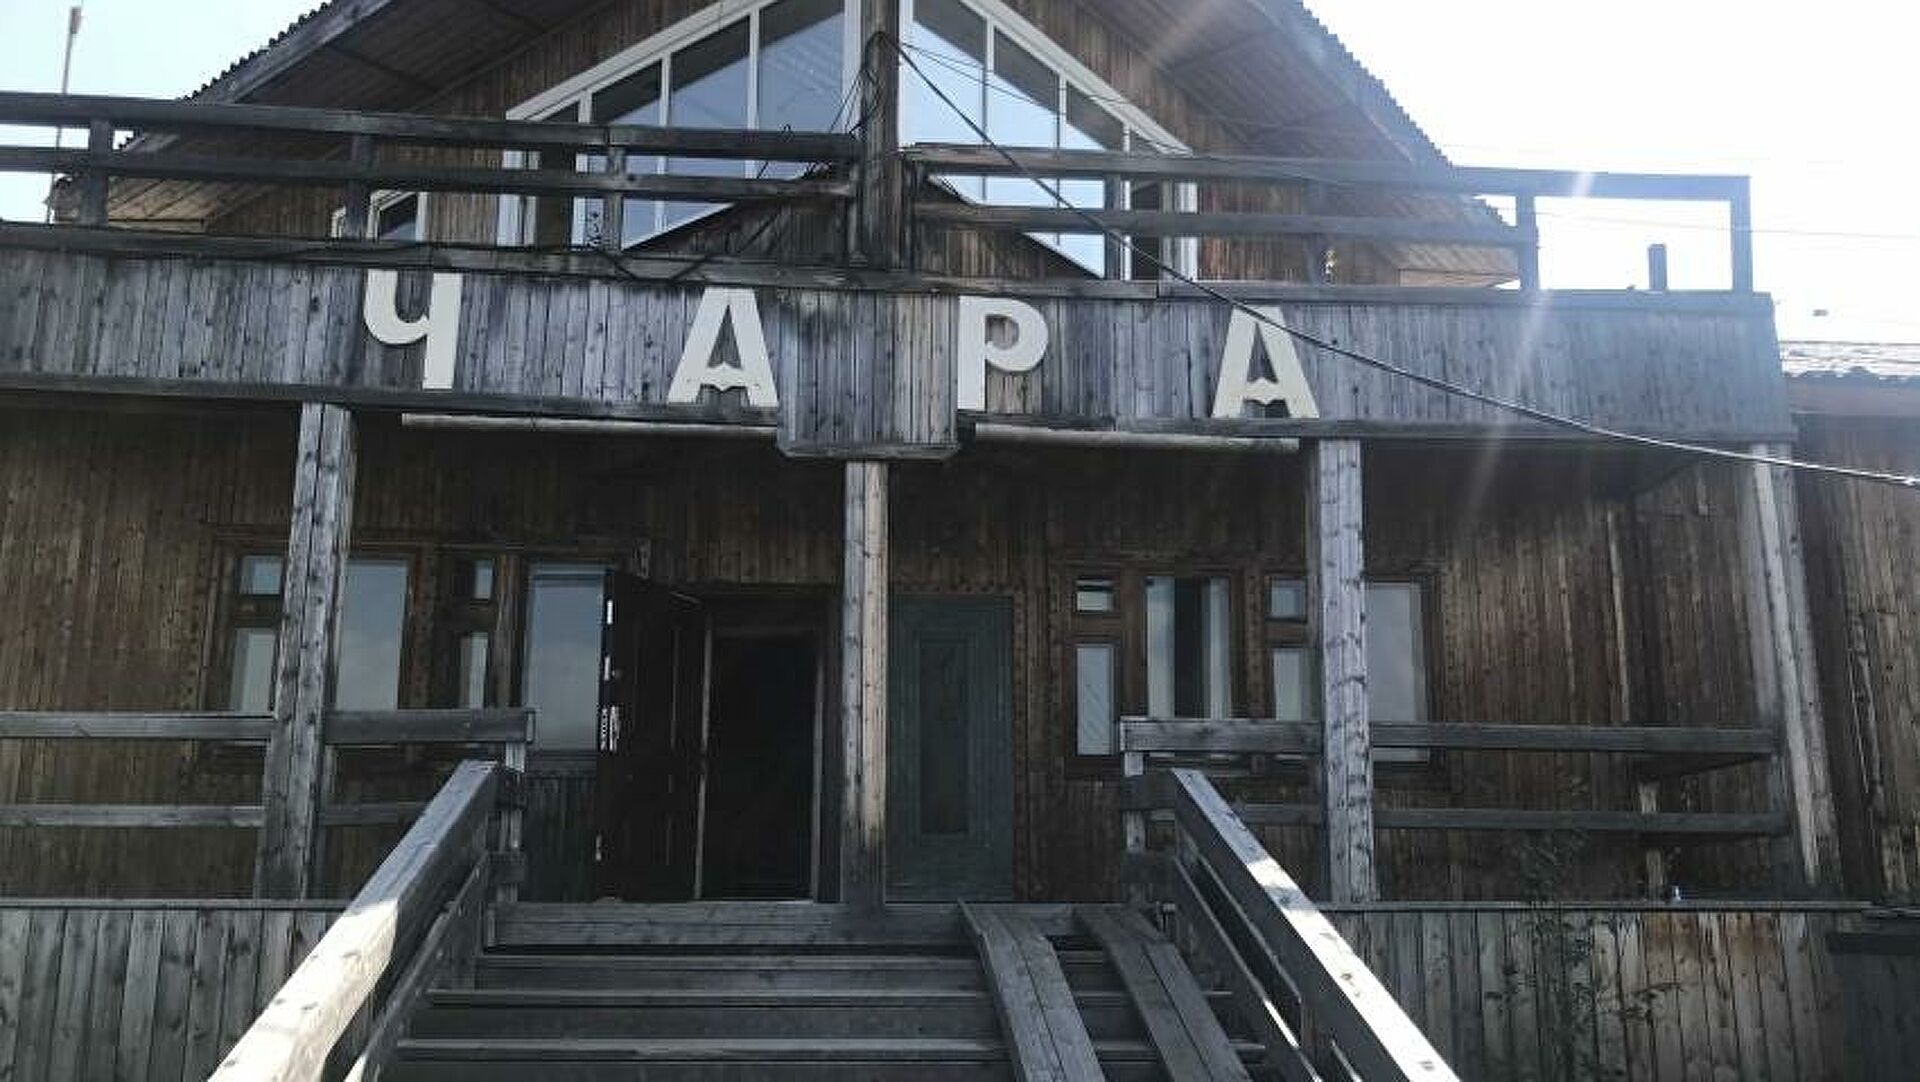 В Забайкалье начали поиск подрядчика для реконструкции аэропорта в селе Чара